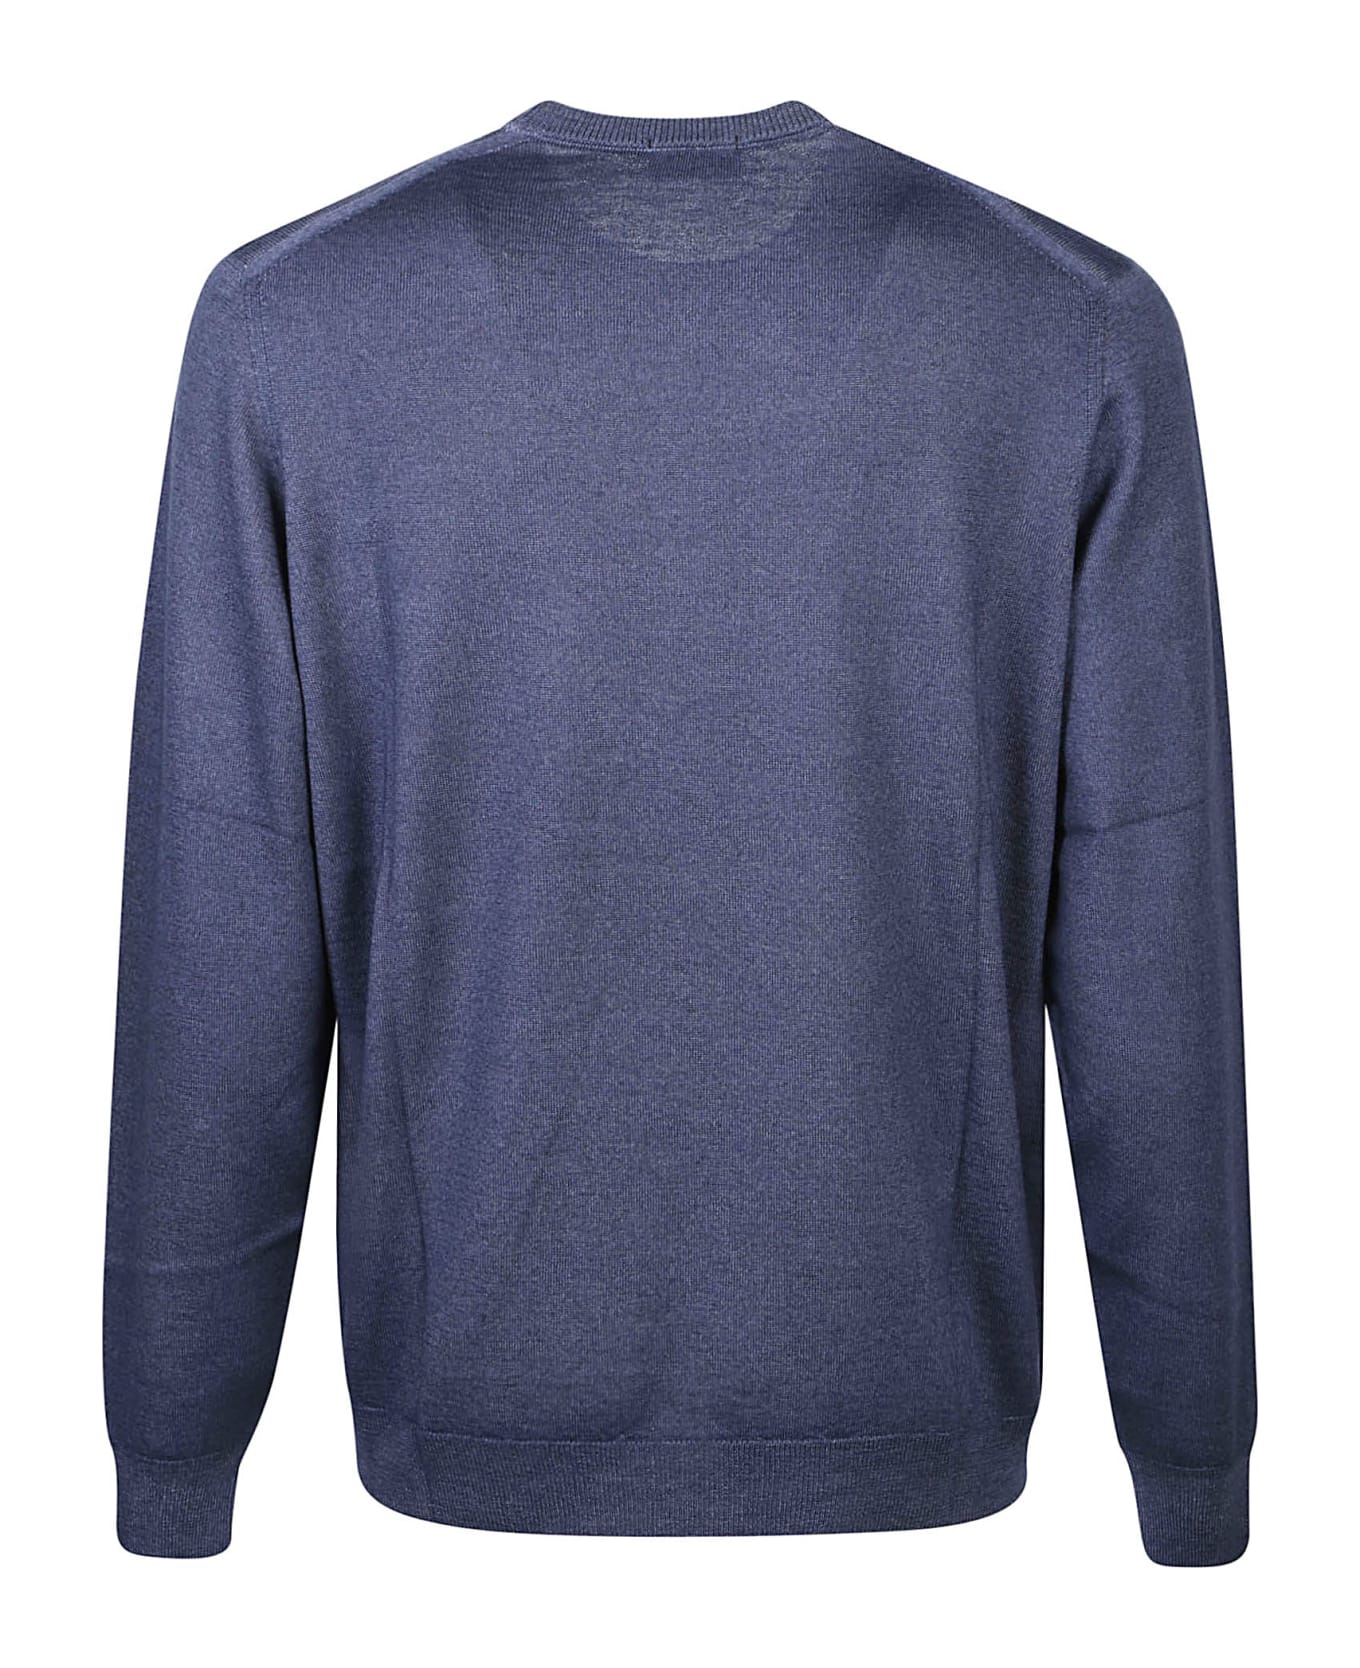 Drumohr Long Sleeve Shaved Sweater - Blu ニットウェア